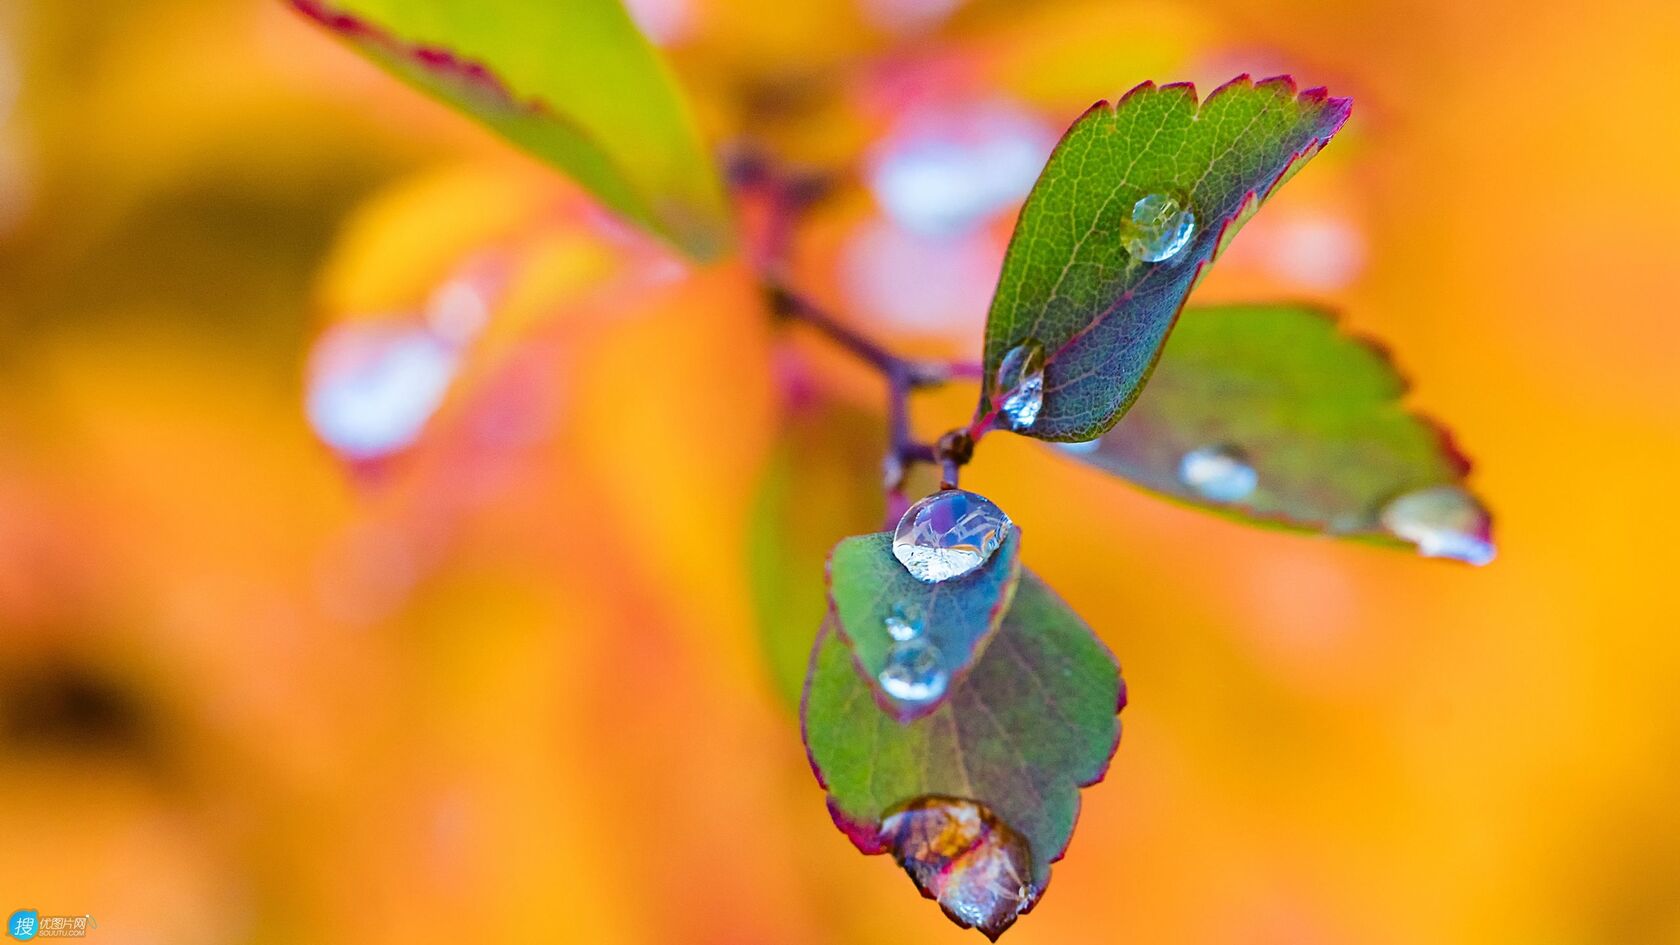 树叶上的水滴唯美微距摄影橙色背景壁纸图片第1张图片